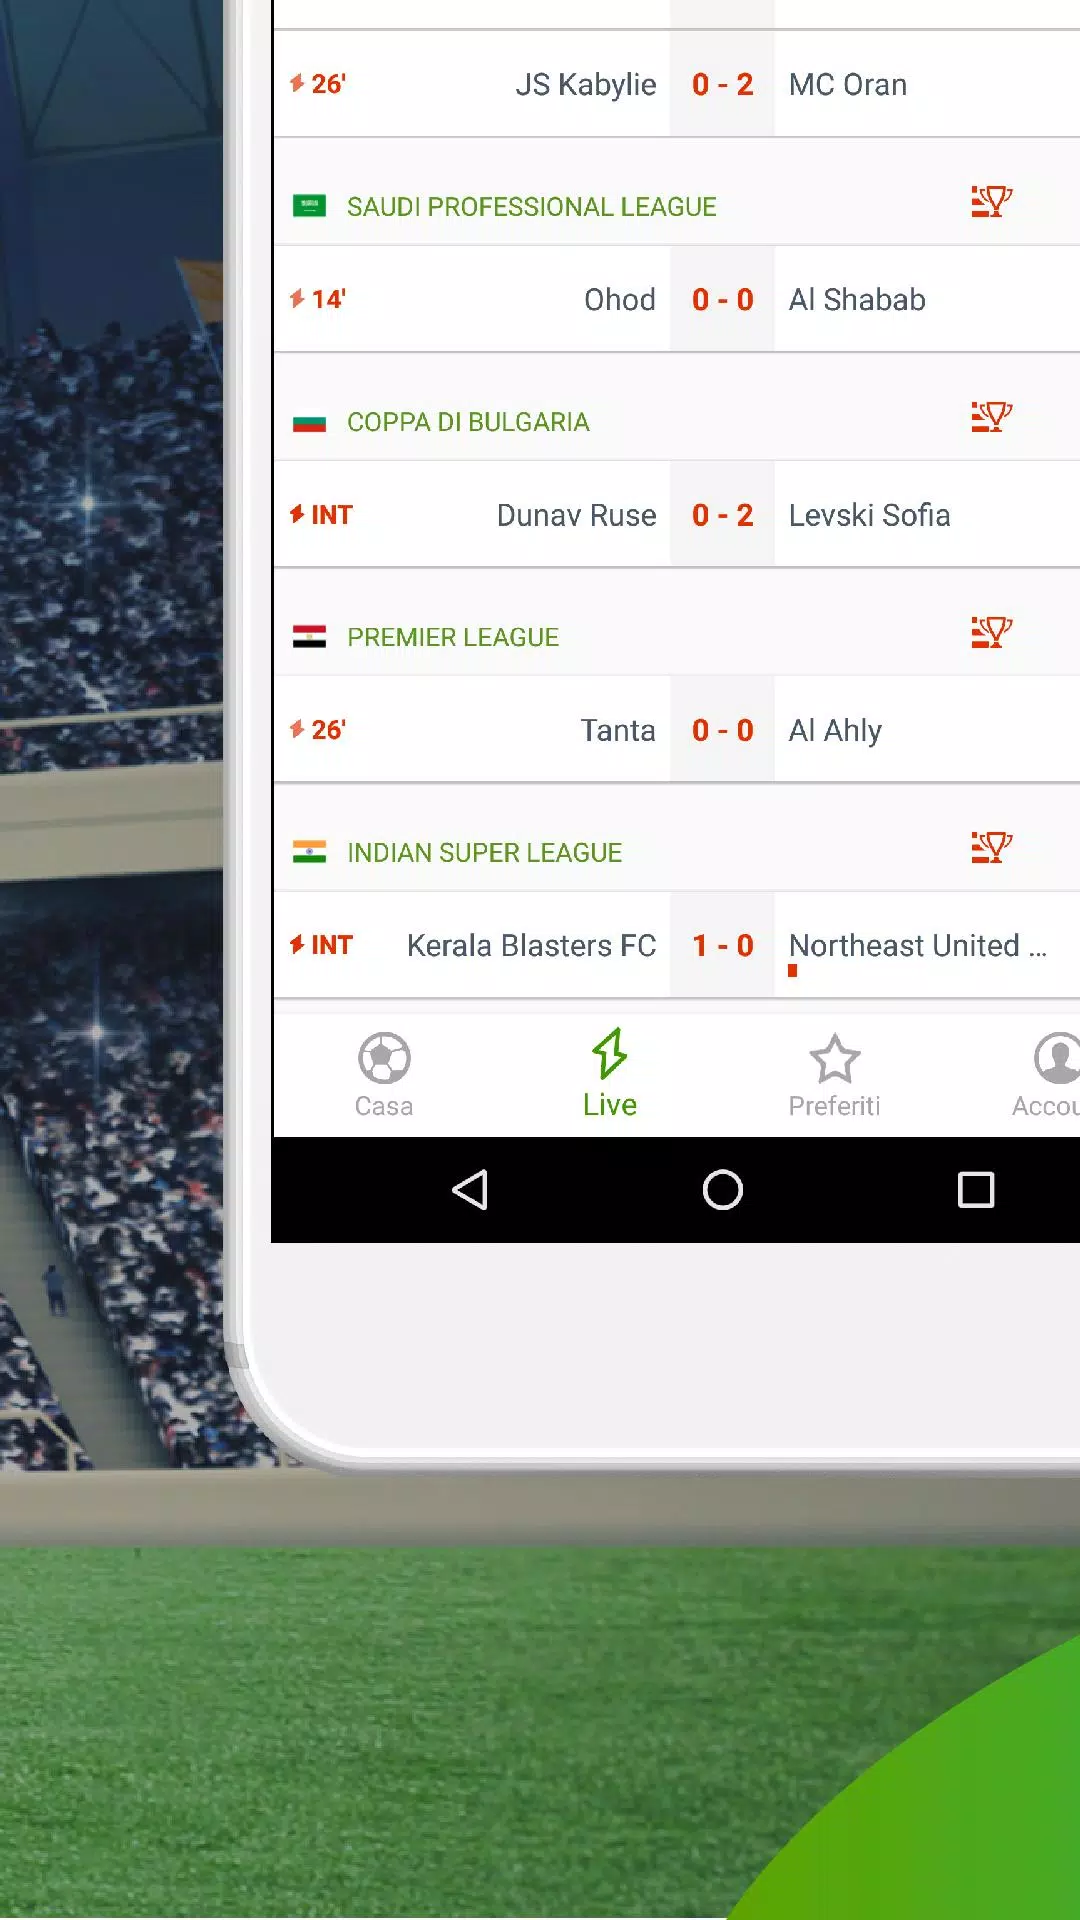 livescore.it: risultati di calcio in diretta for Android - APK Download